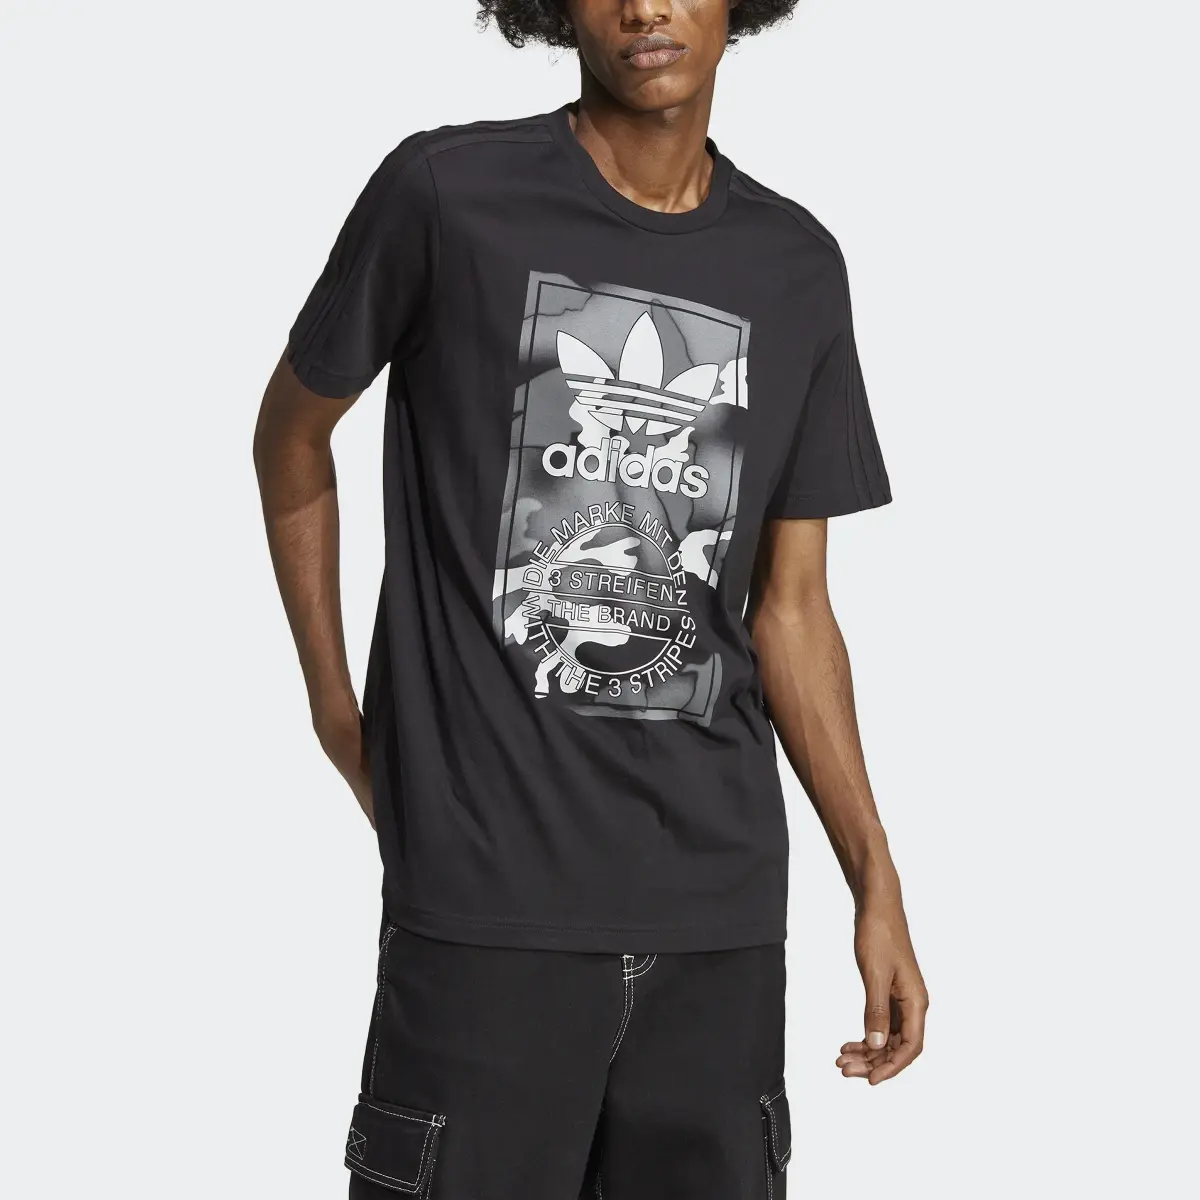 Adidas T-shirt languette graphique à motif camouflage. 1